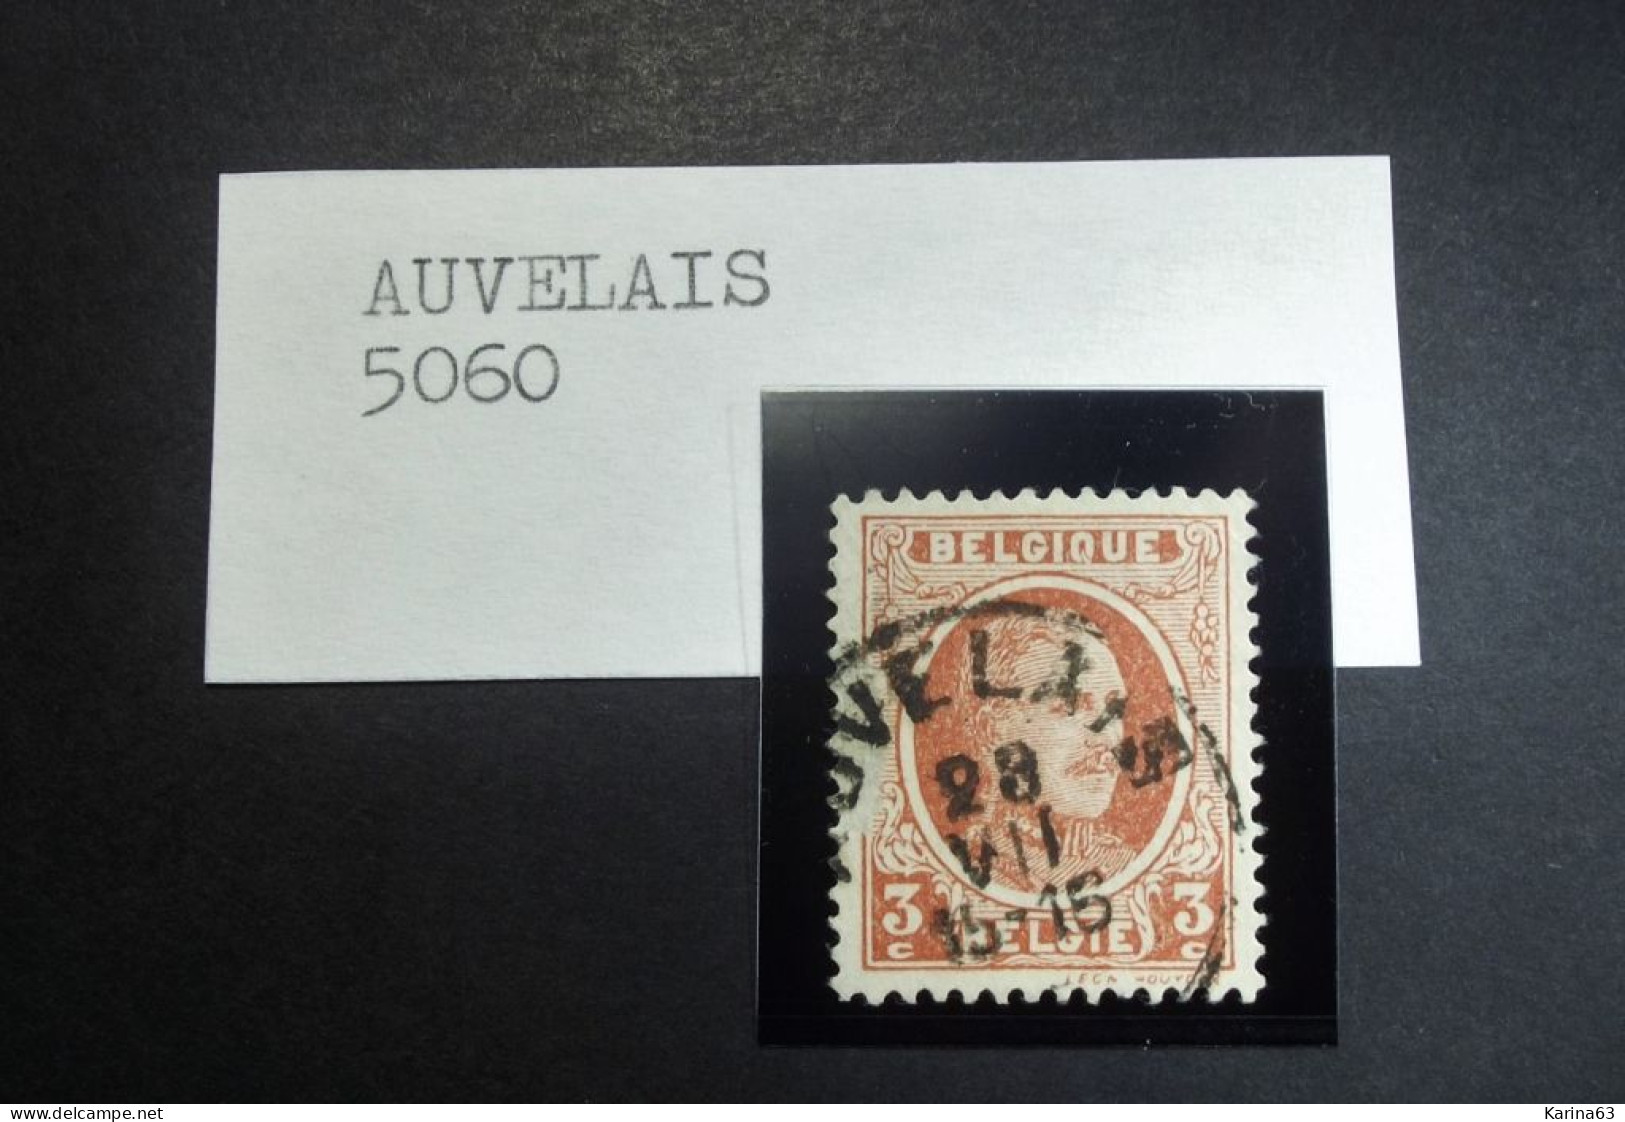 Belgie - Belgique 1922 - Houyoux - OPB/COB  N° 1192  - 3 C  - Obl. - AUVELAIS - 1922-1927 Houyoux